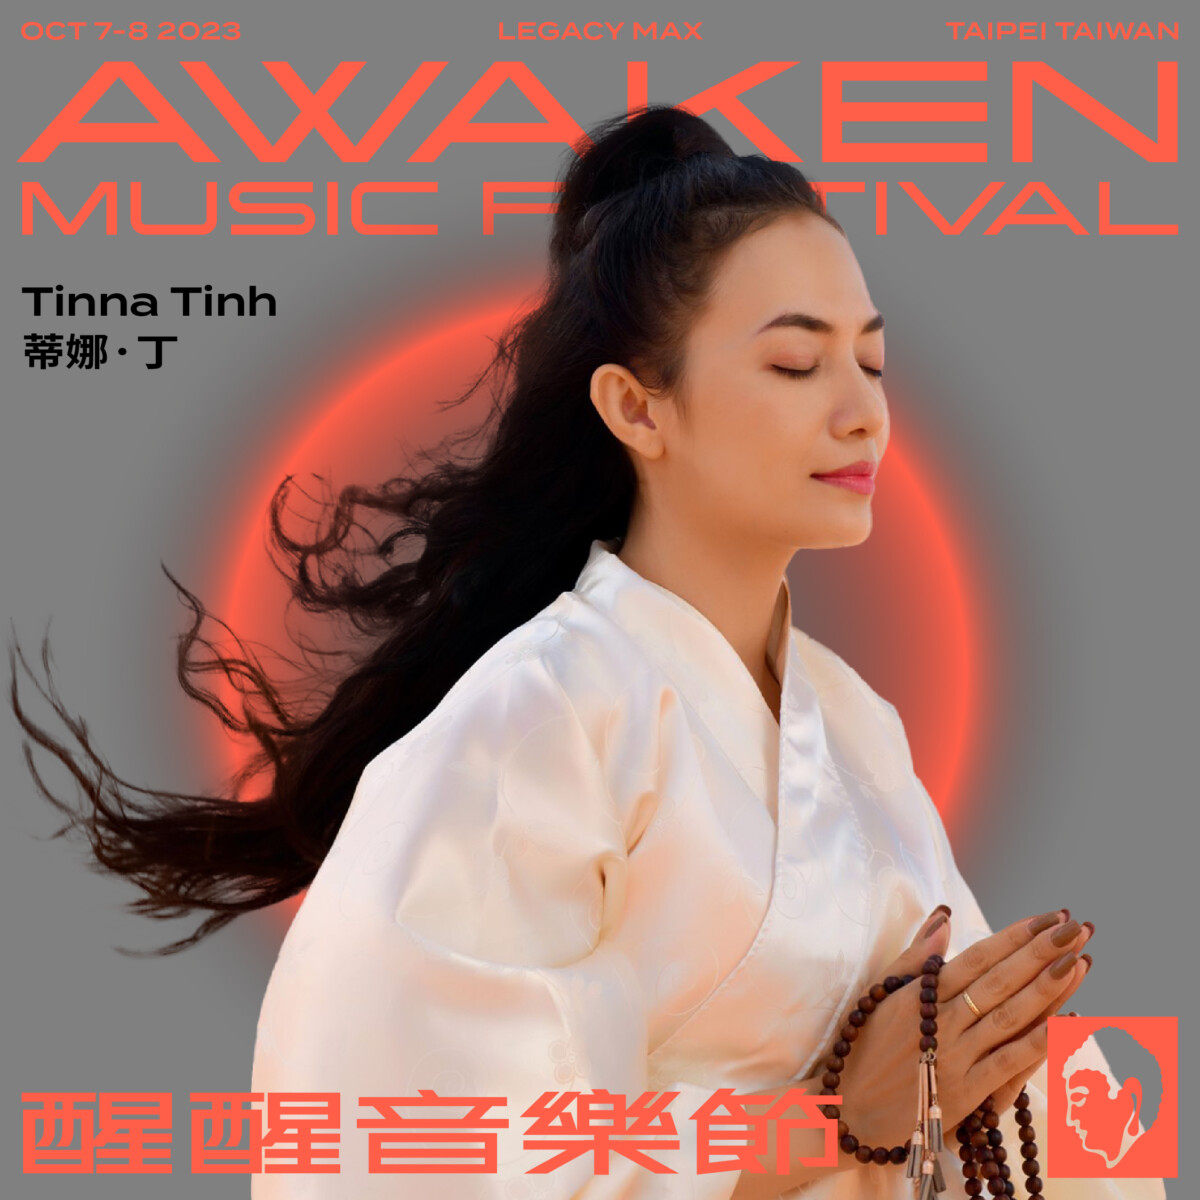 全球首創佛教主題電音派對Awaken Music Festival「醒醒音樂節」 @Ya!Travel 野旅行新聞網